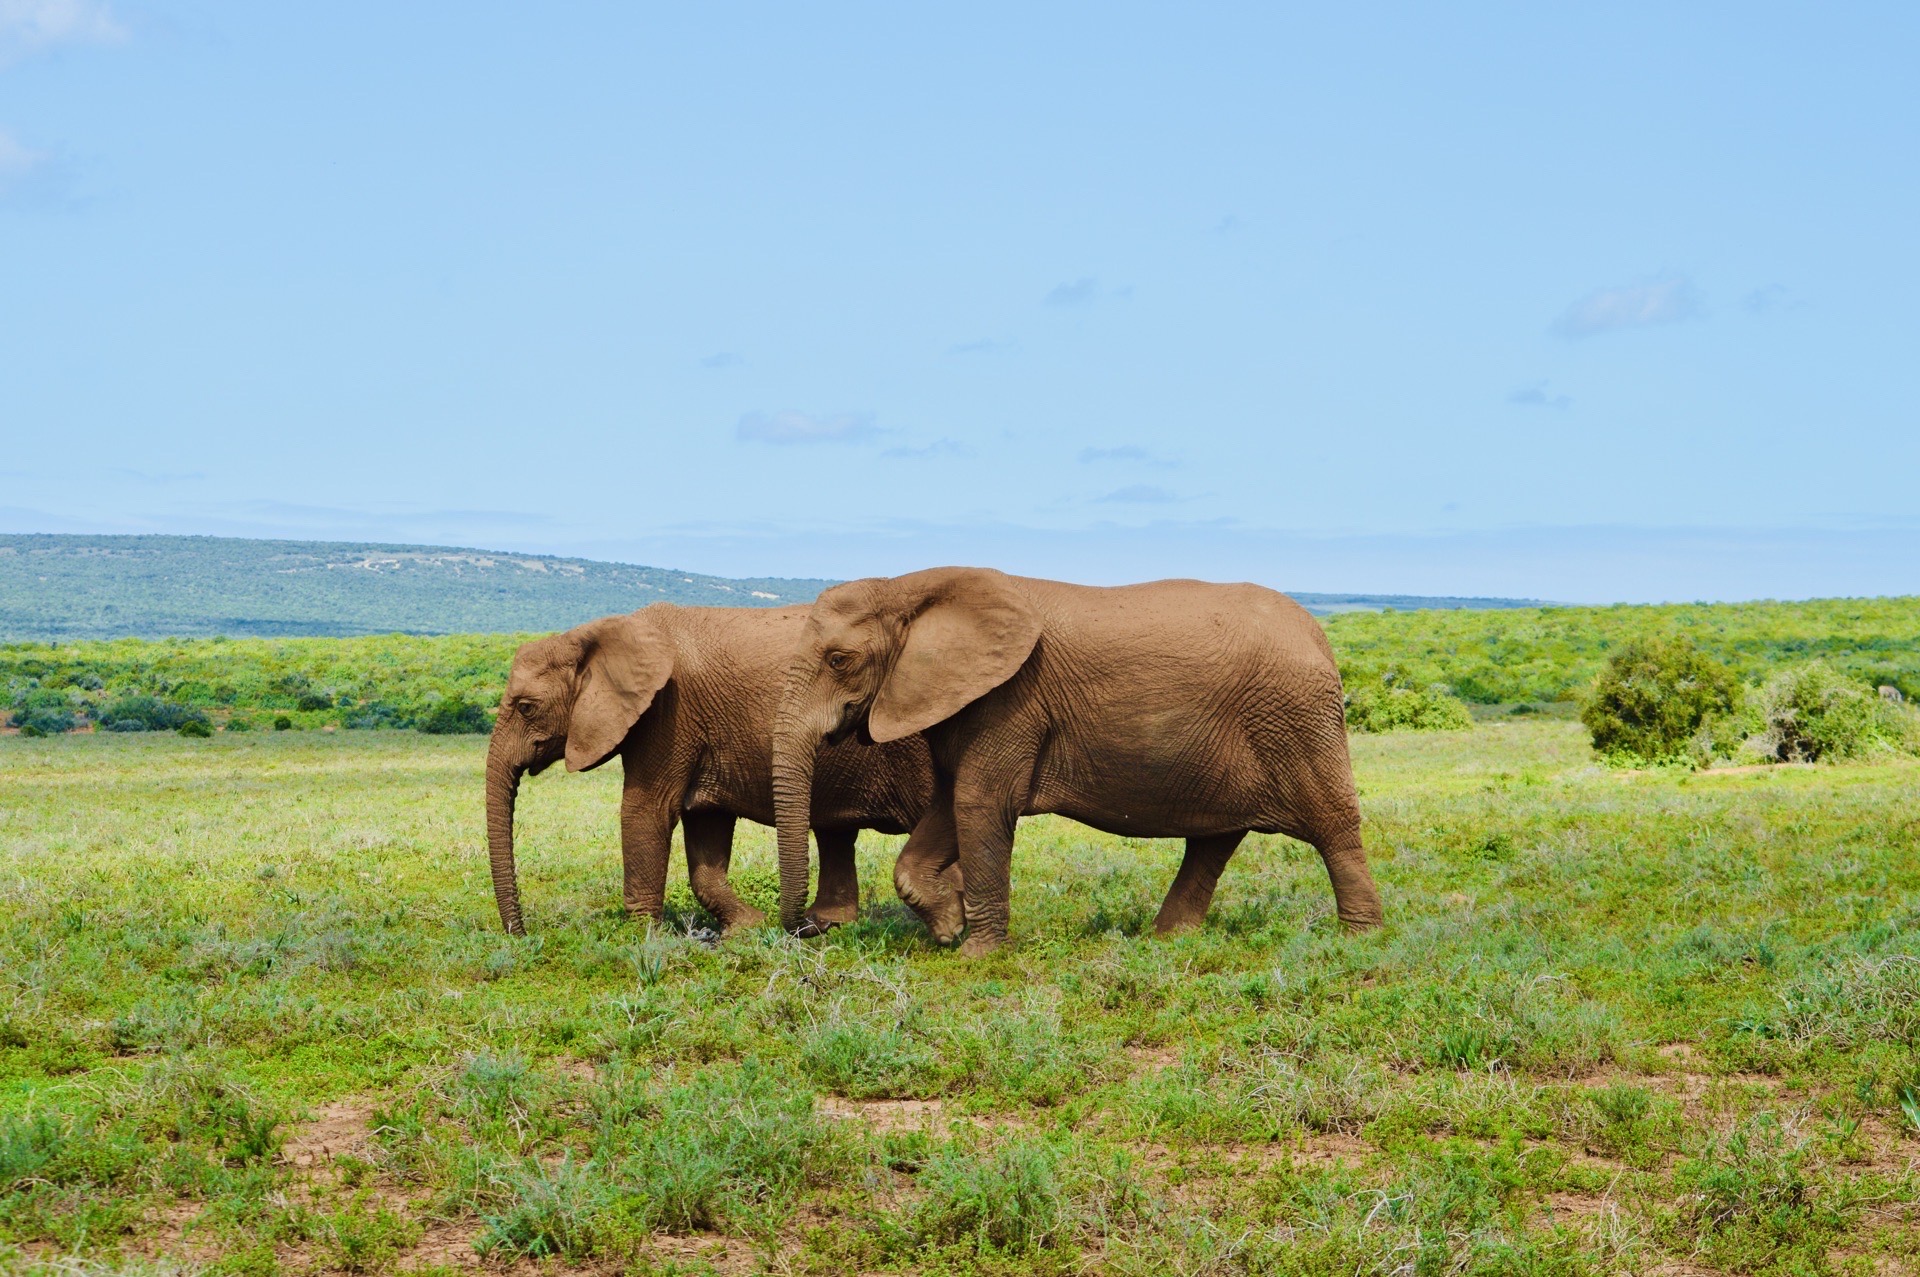 南非必去的小众旅行地-阿多大象国家公园   阿多大象国家公园（Addo Elephant Natio